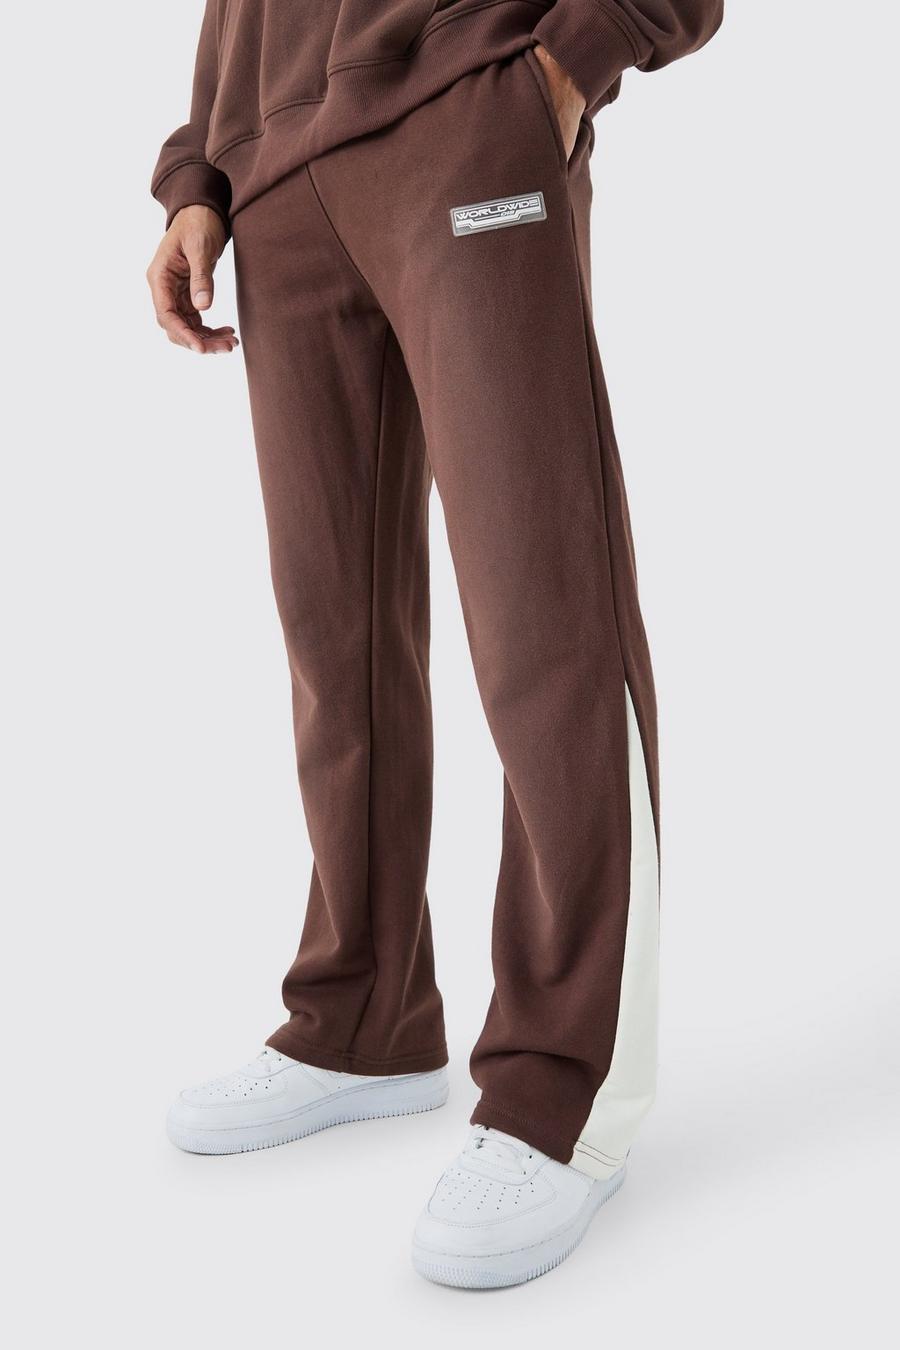 Pantalón deportivo Regular de tela rizo desteñida con refuerzos, Chocolate